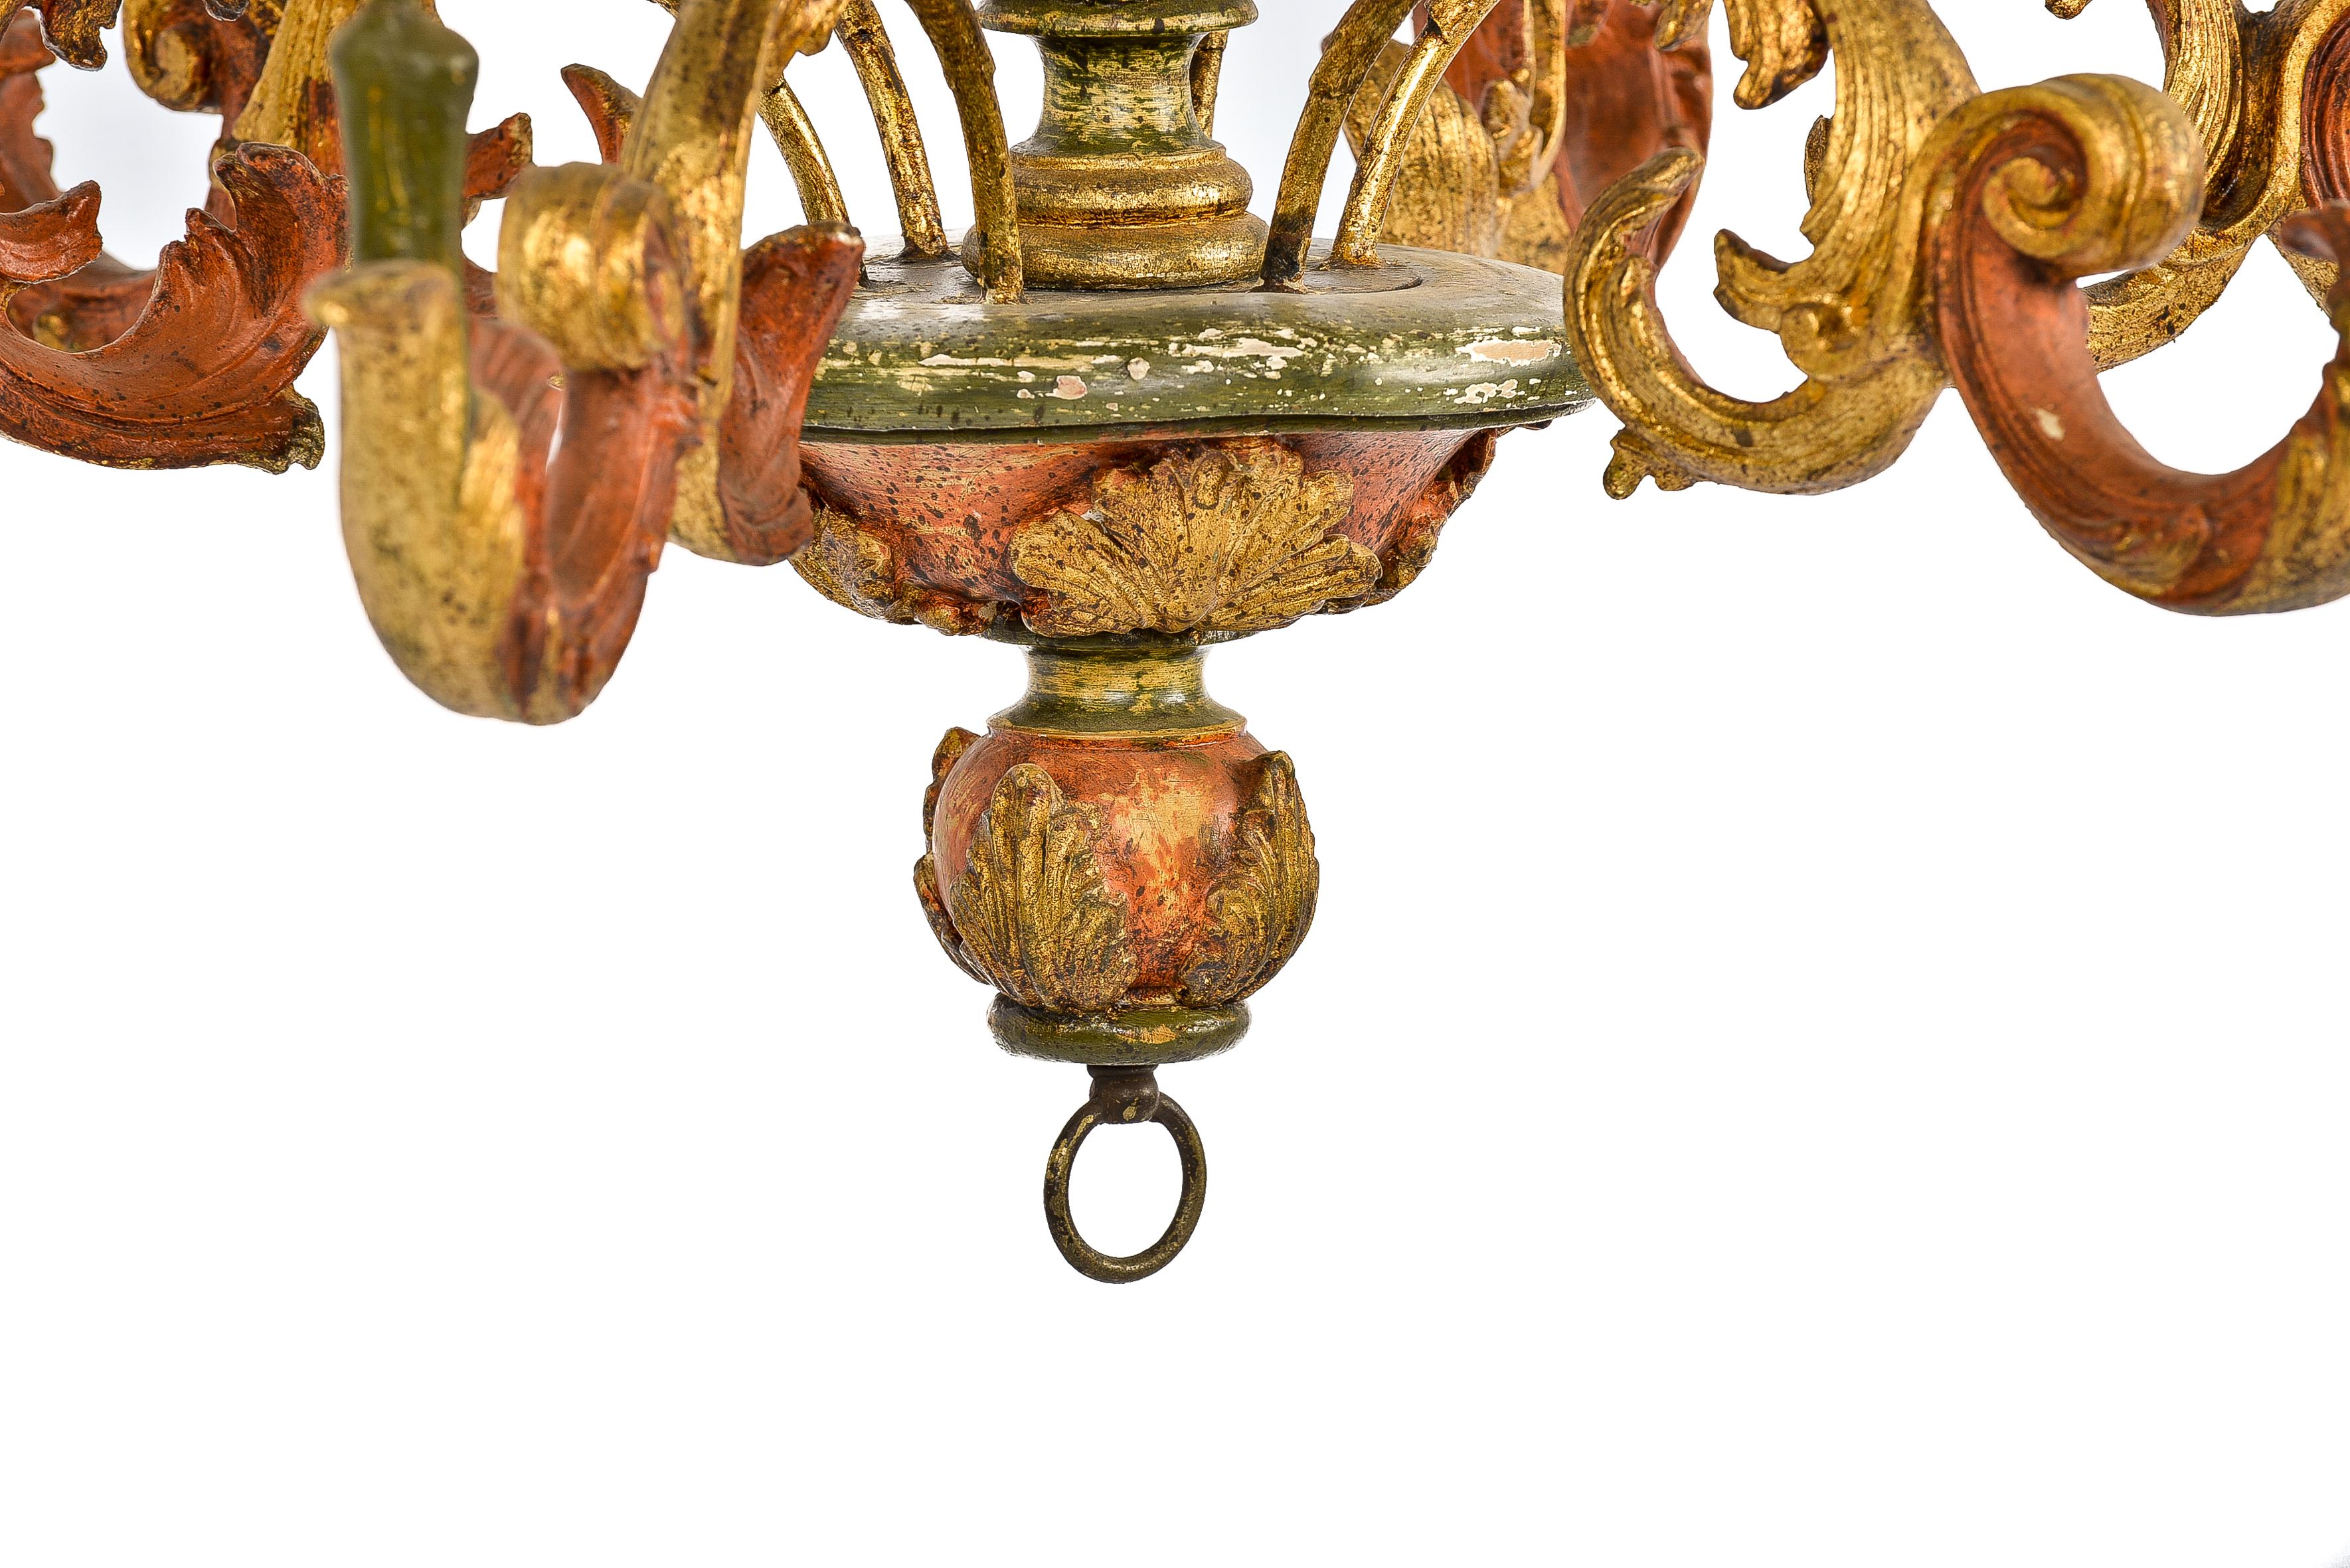 florentine chandelier